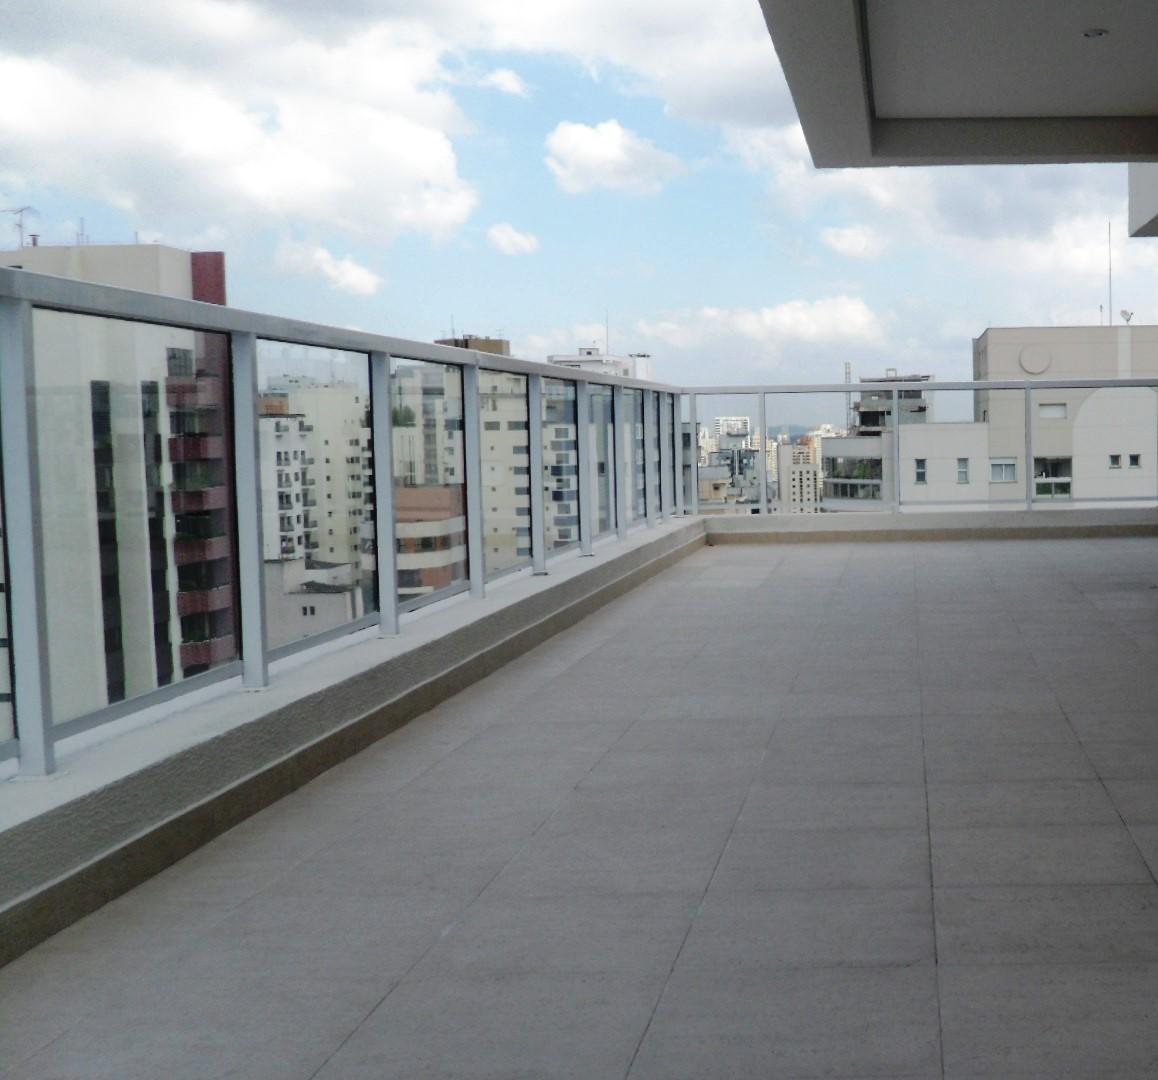 Existem várias soluções de revestimento em terraços sendo os mais comuns os ladrilhos cerâmicos, placas pétreas e membranas betuminosas.